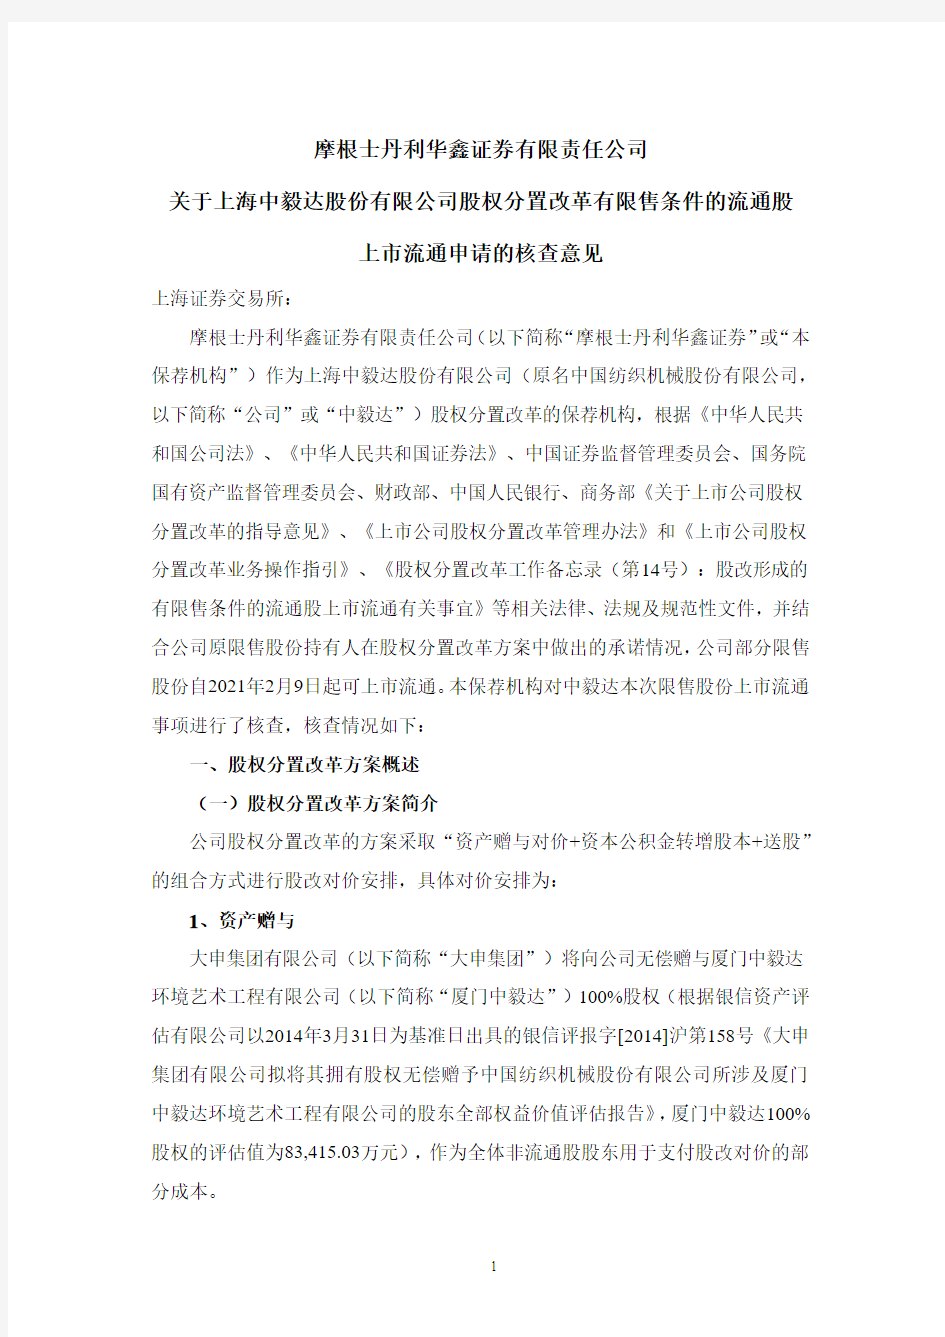 600610摩根士丹利华鑫证券有限责任公司关于上海中毅达股份有限公司股2021-02-03